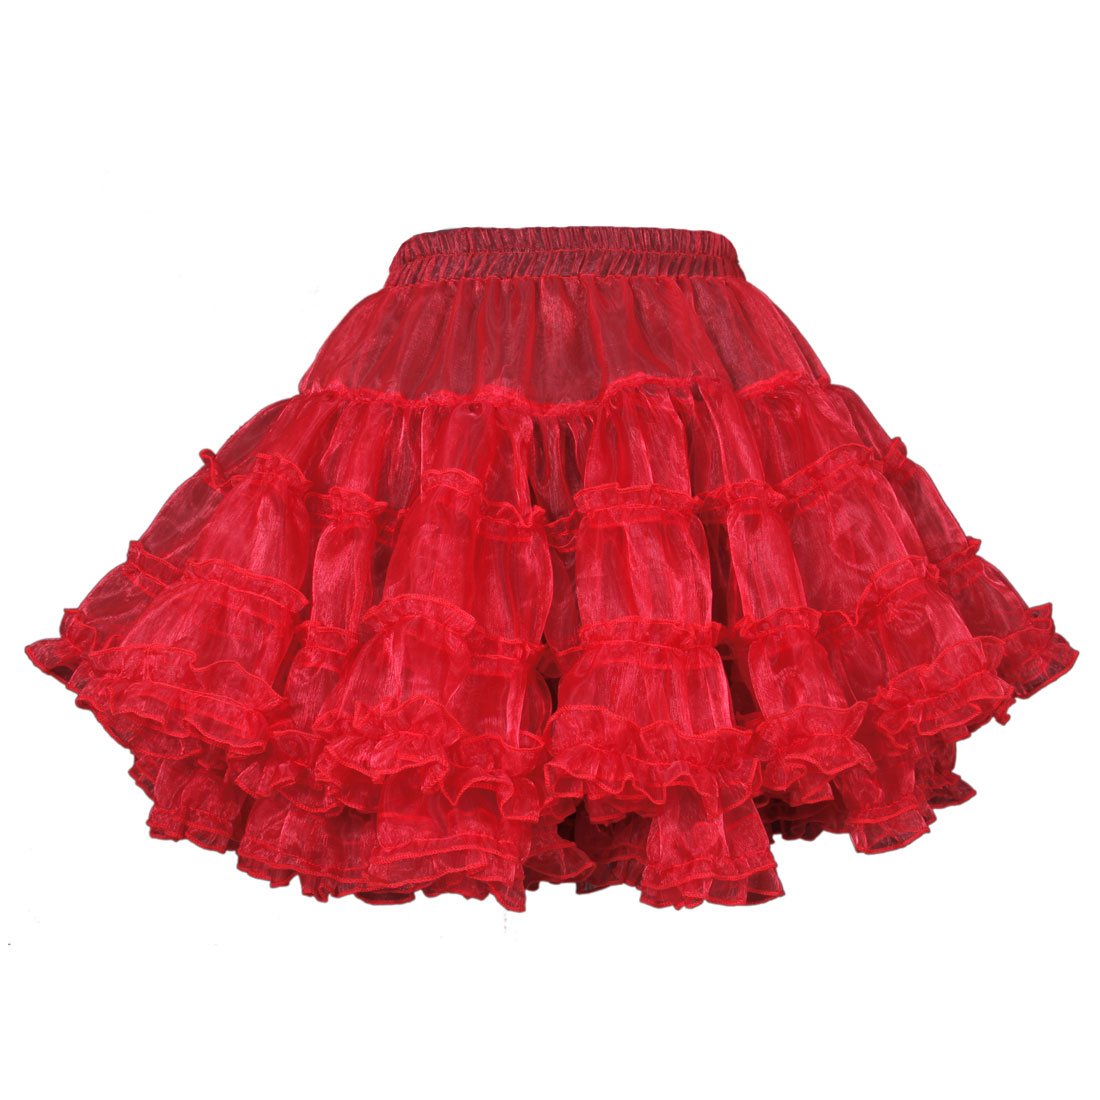 Yemima Heavy Frilled Tutu Skirt Red - Corset Revolution